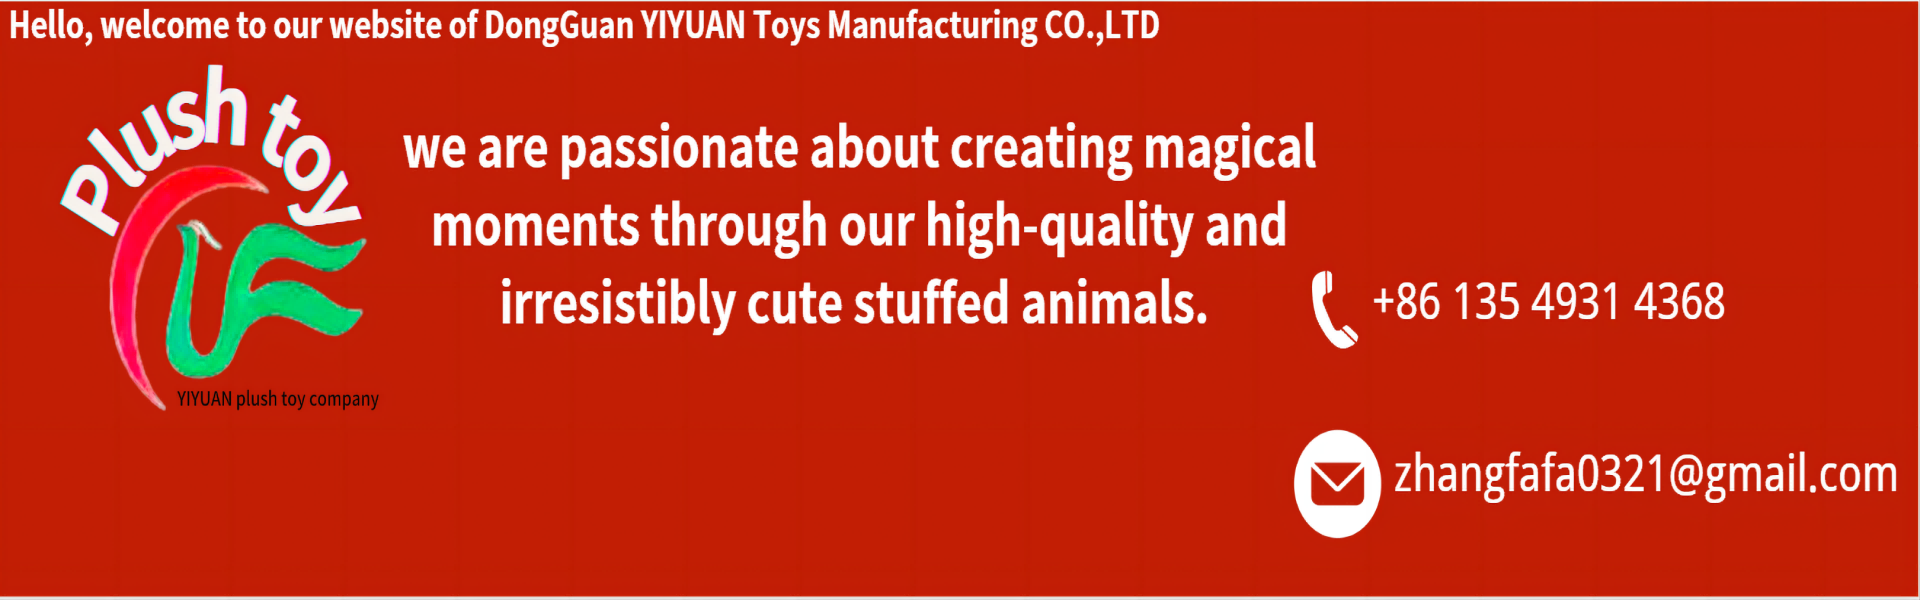 jouet en peluche, équipes professionnelles de haute qualité et professionnelles,yiyuan plush toy company